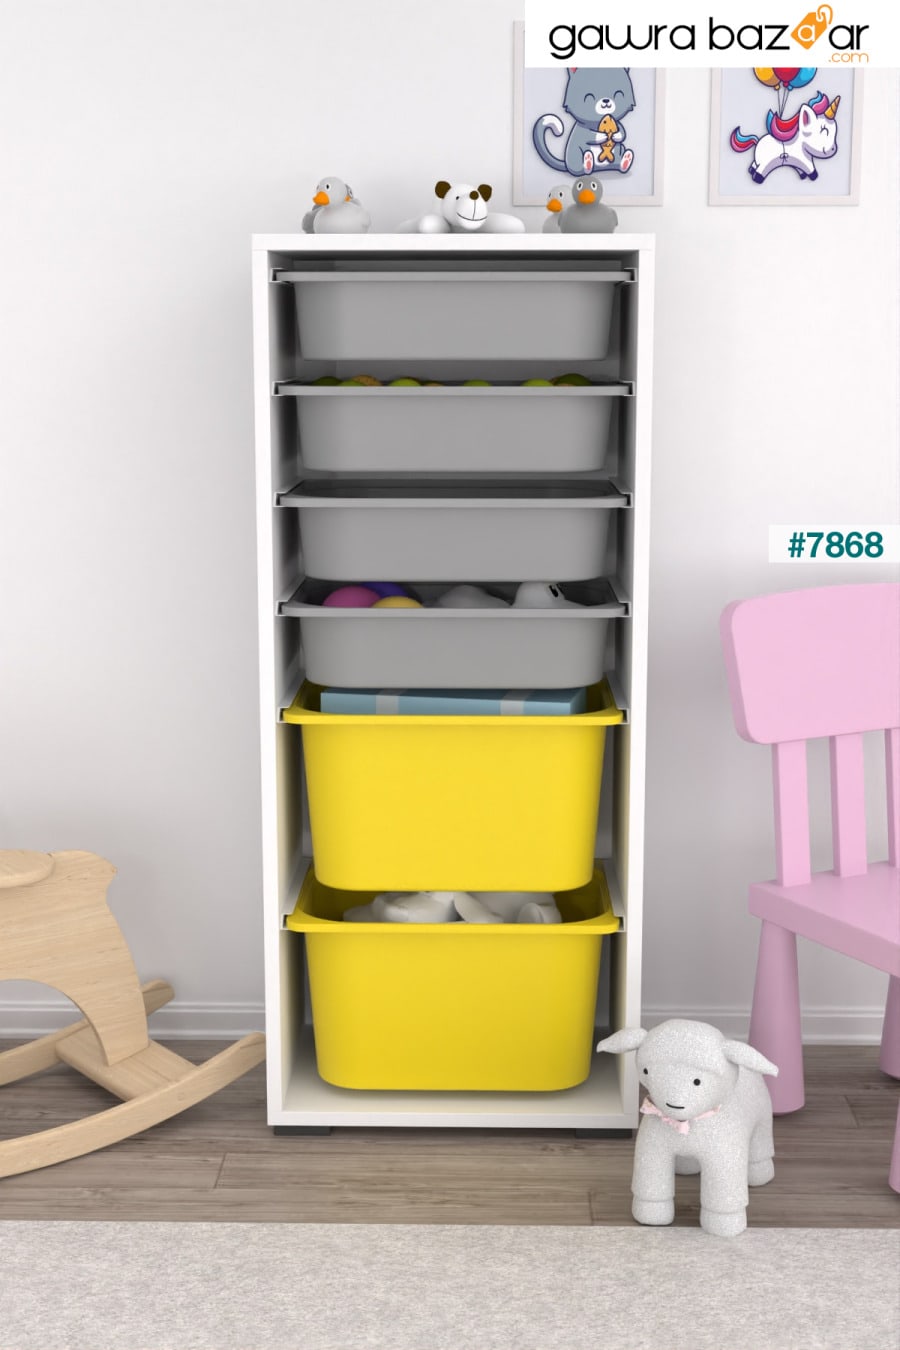 2 Big 4 خزانة ألعاب صغيرة متعددة الأغراض للمطبخ والحمام خزانة ألعاب باللون الأصفر والرمادي Pratico 0